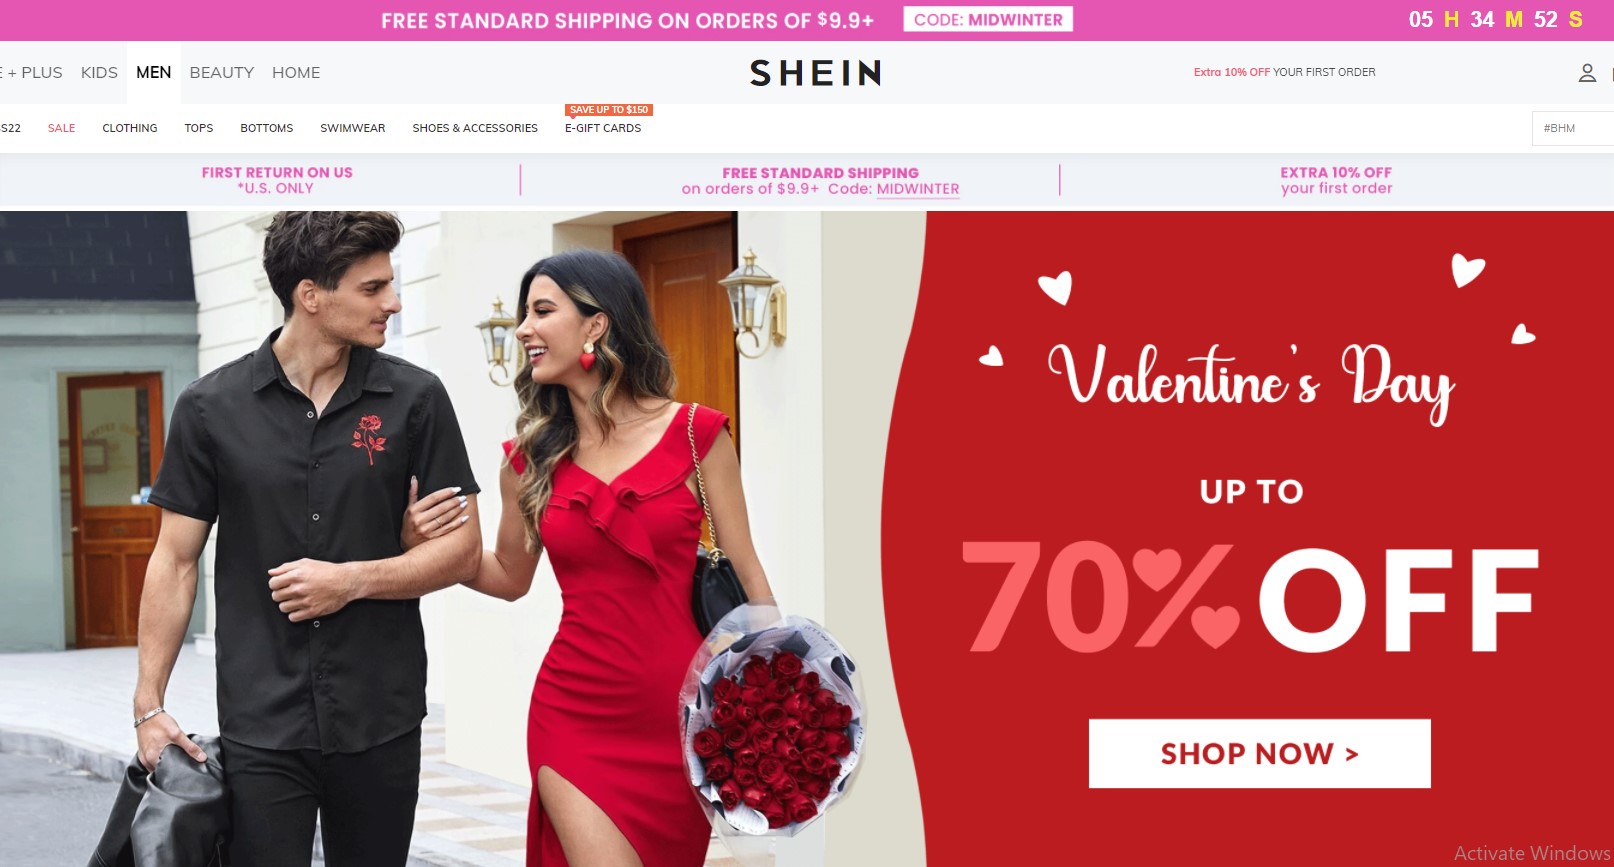 Shein Website